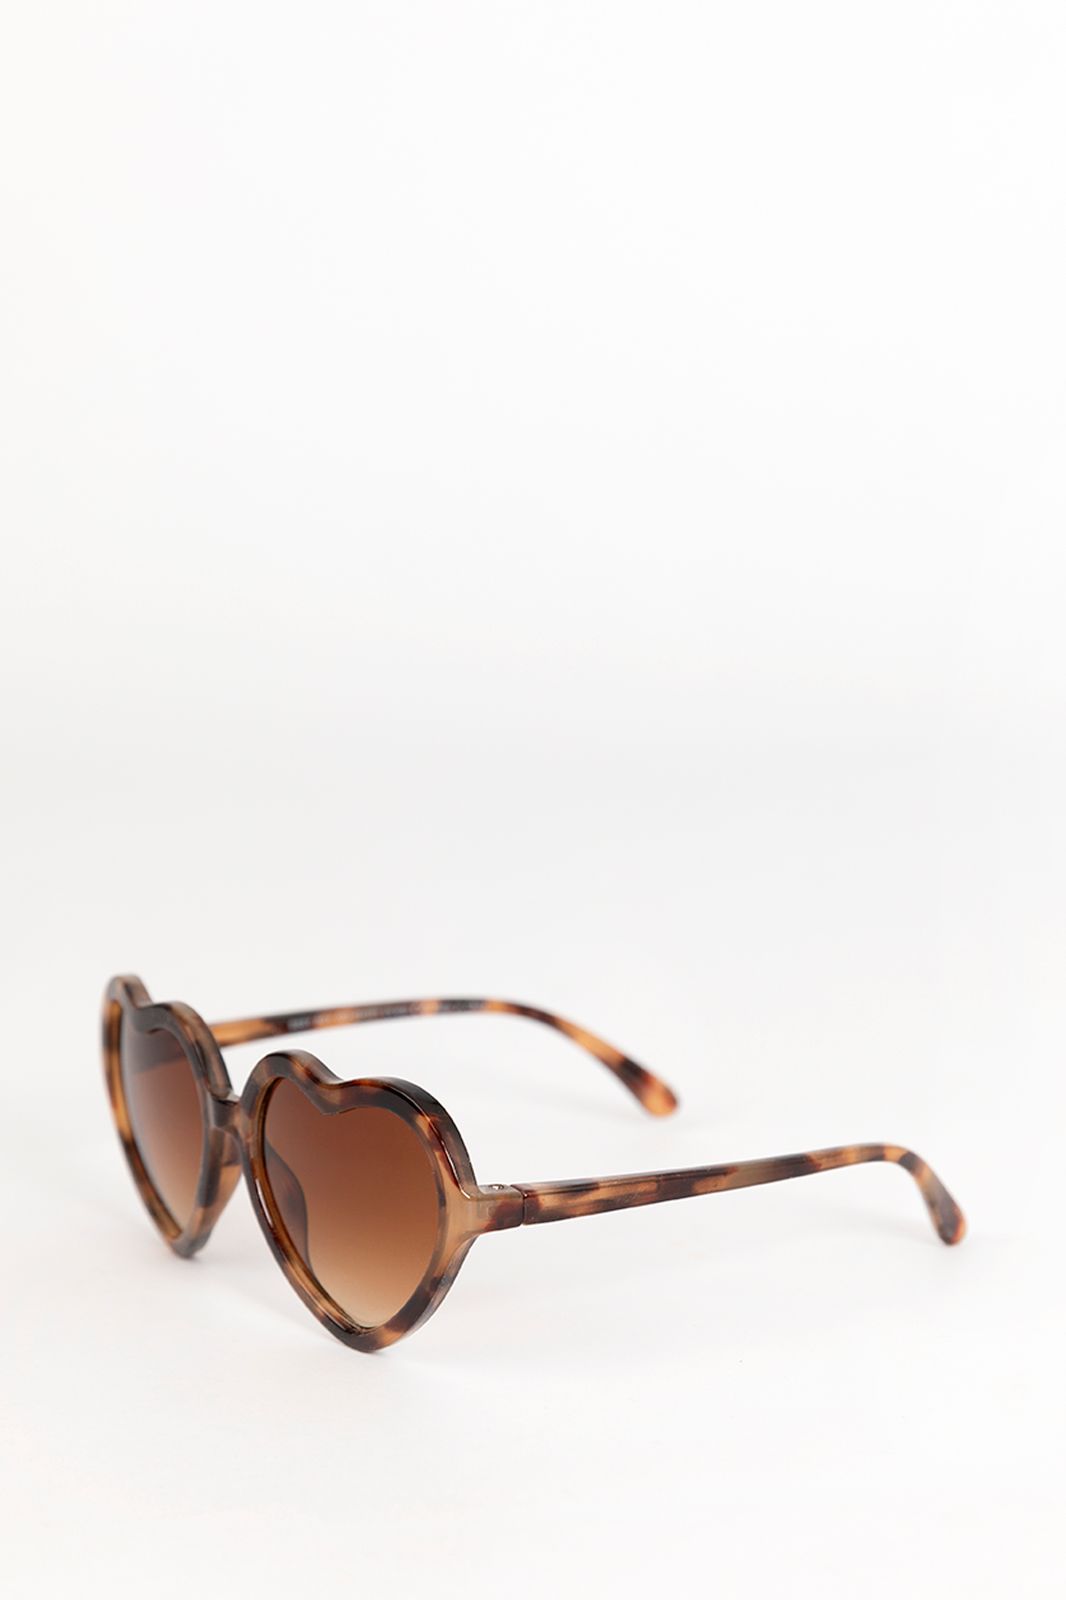 Herzförmige Sonnenbrille mit Animalprint - braun